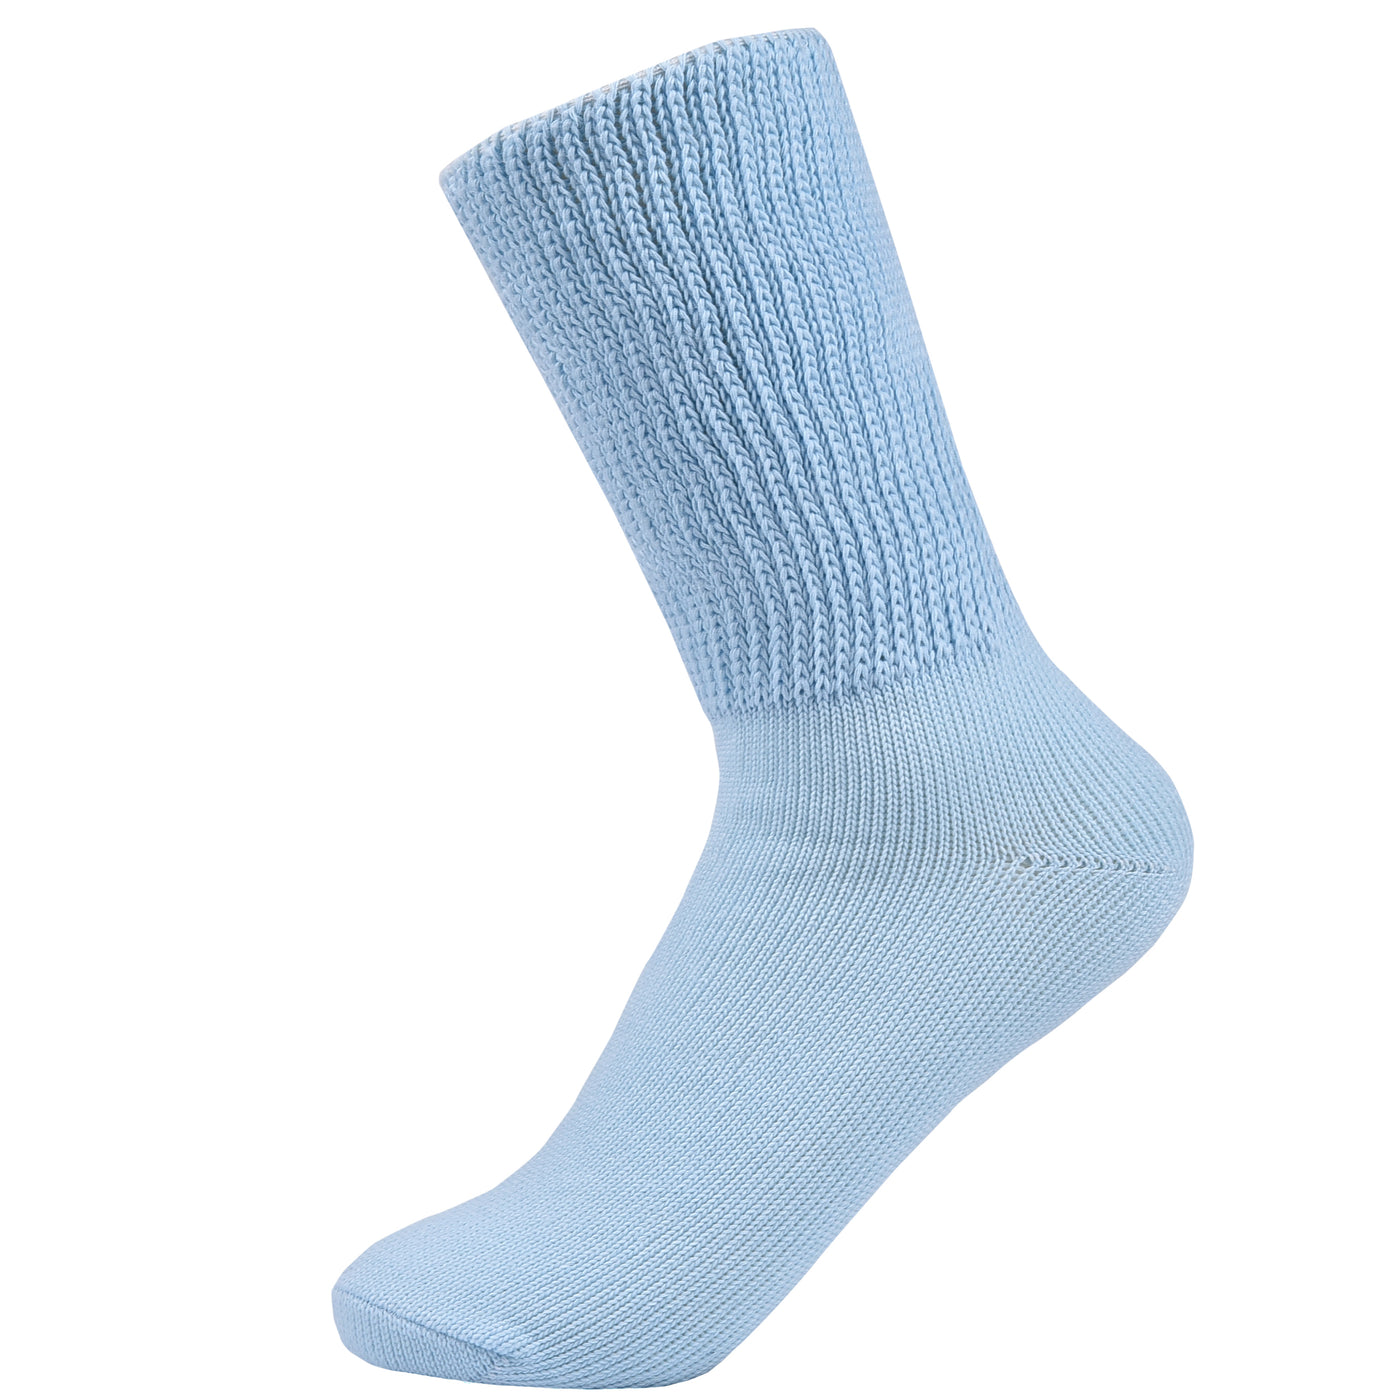 Laulax 3 pares de calcetines de algodón para diabéticos con parte superior holgada y agarre suave, negro, rosa, azul, talla UK 4 - 7 / Europa 36 - 41